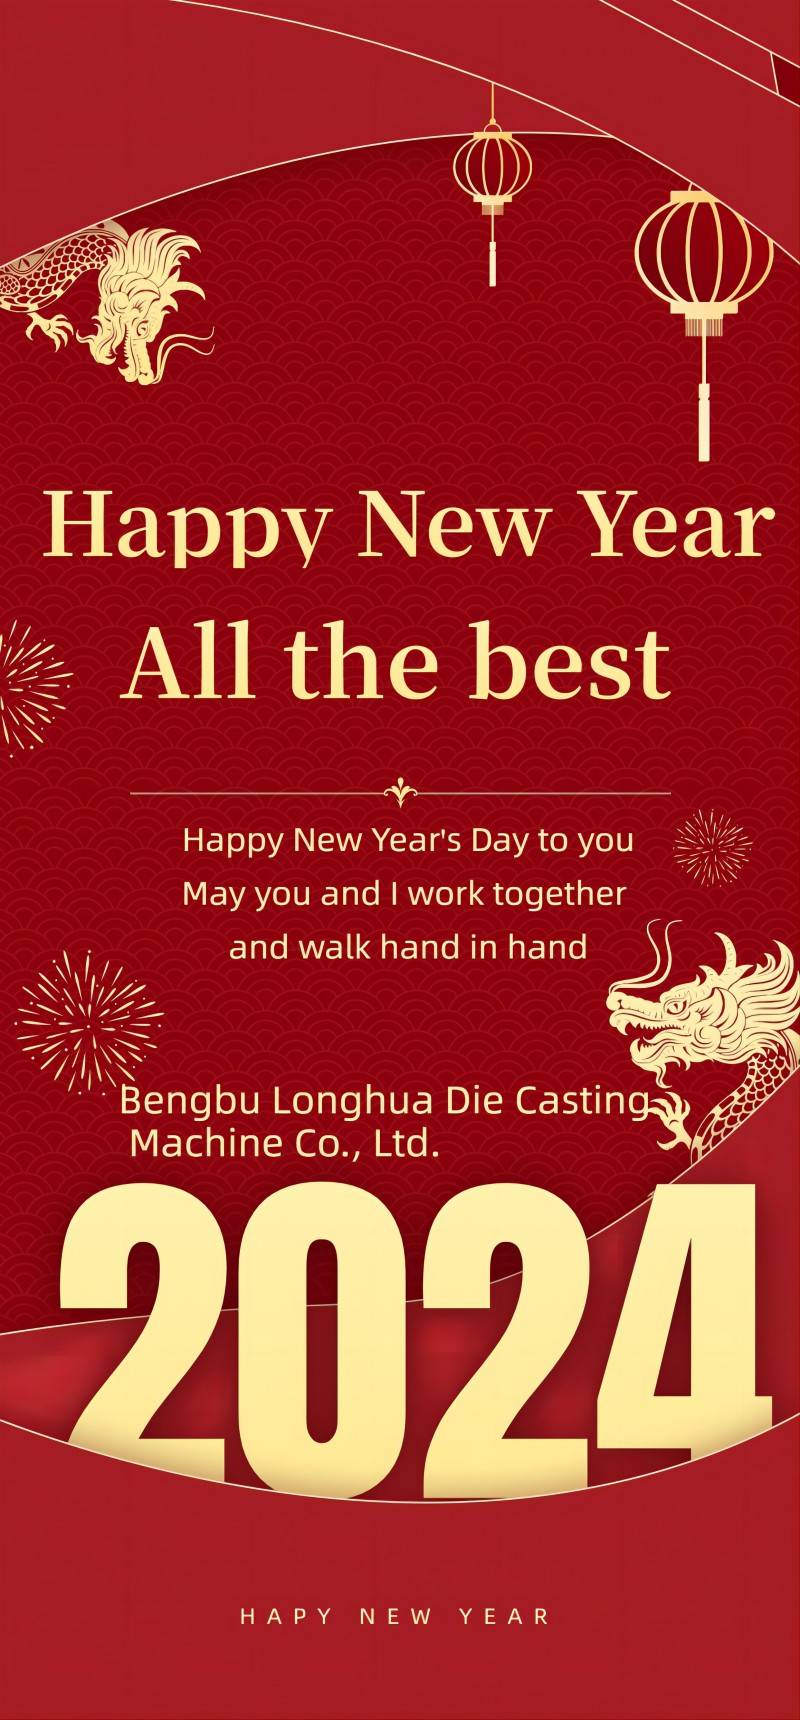 شركة Bengbu Longhua Die Casting Machine Co., Ltd. إشعار عطلة رأس السنة الجديدة
    